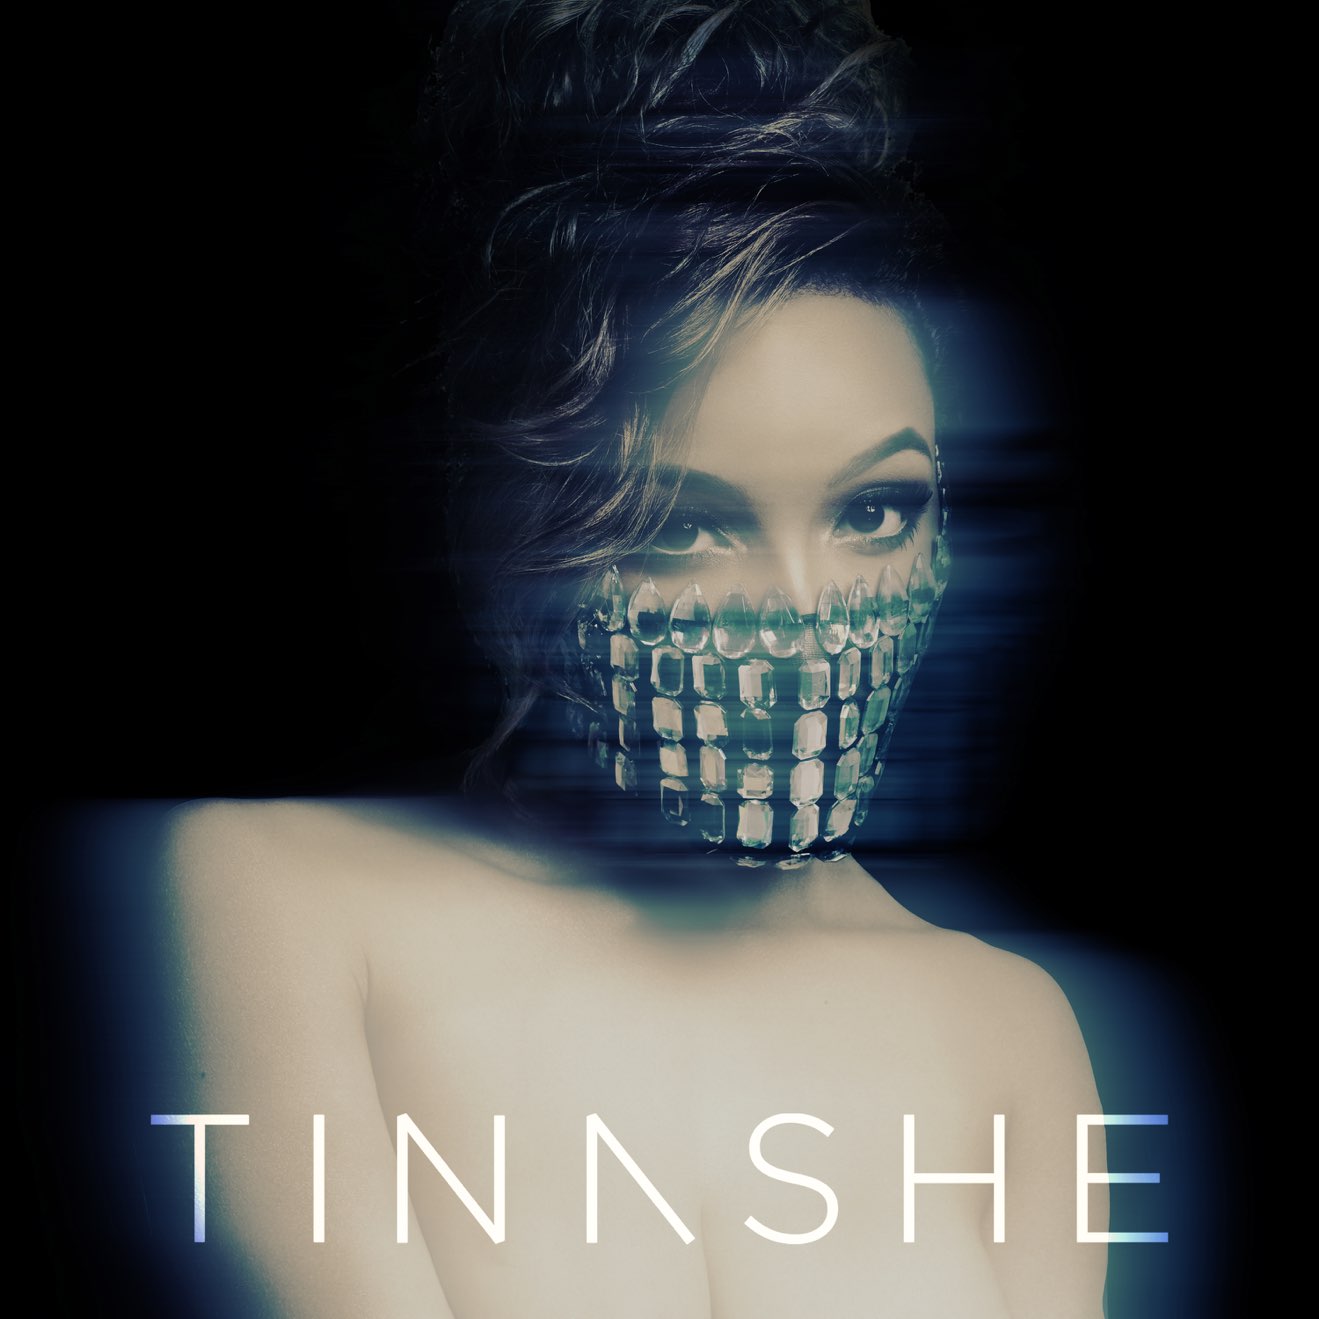 Tinashe – Aquarius (Japan Version) (2014) [iTunes Match M4A]